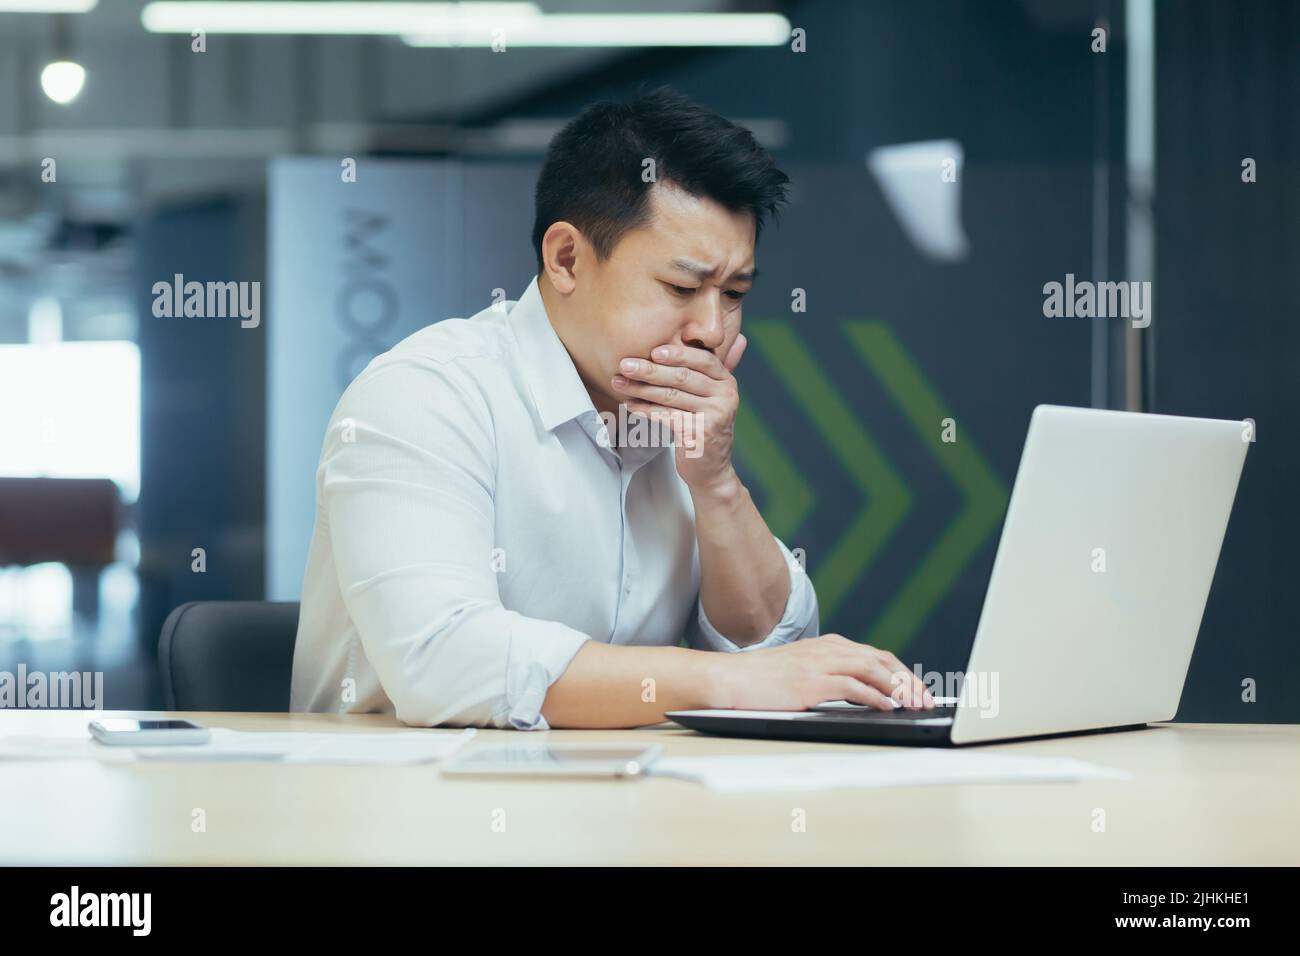 Hombre enfermo en el trabajo, hombre asiático nauseoso envenenado por mal almuerzo, hombre de negocios que trabaja en una oficina moderna con ordenador portátil Foto de stock